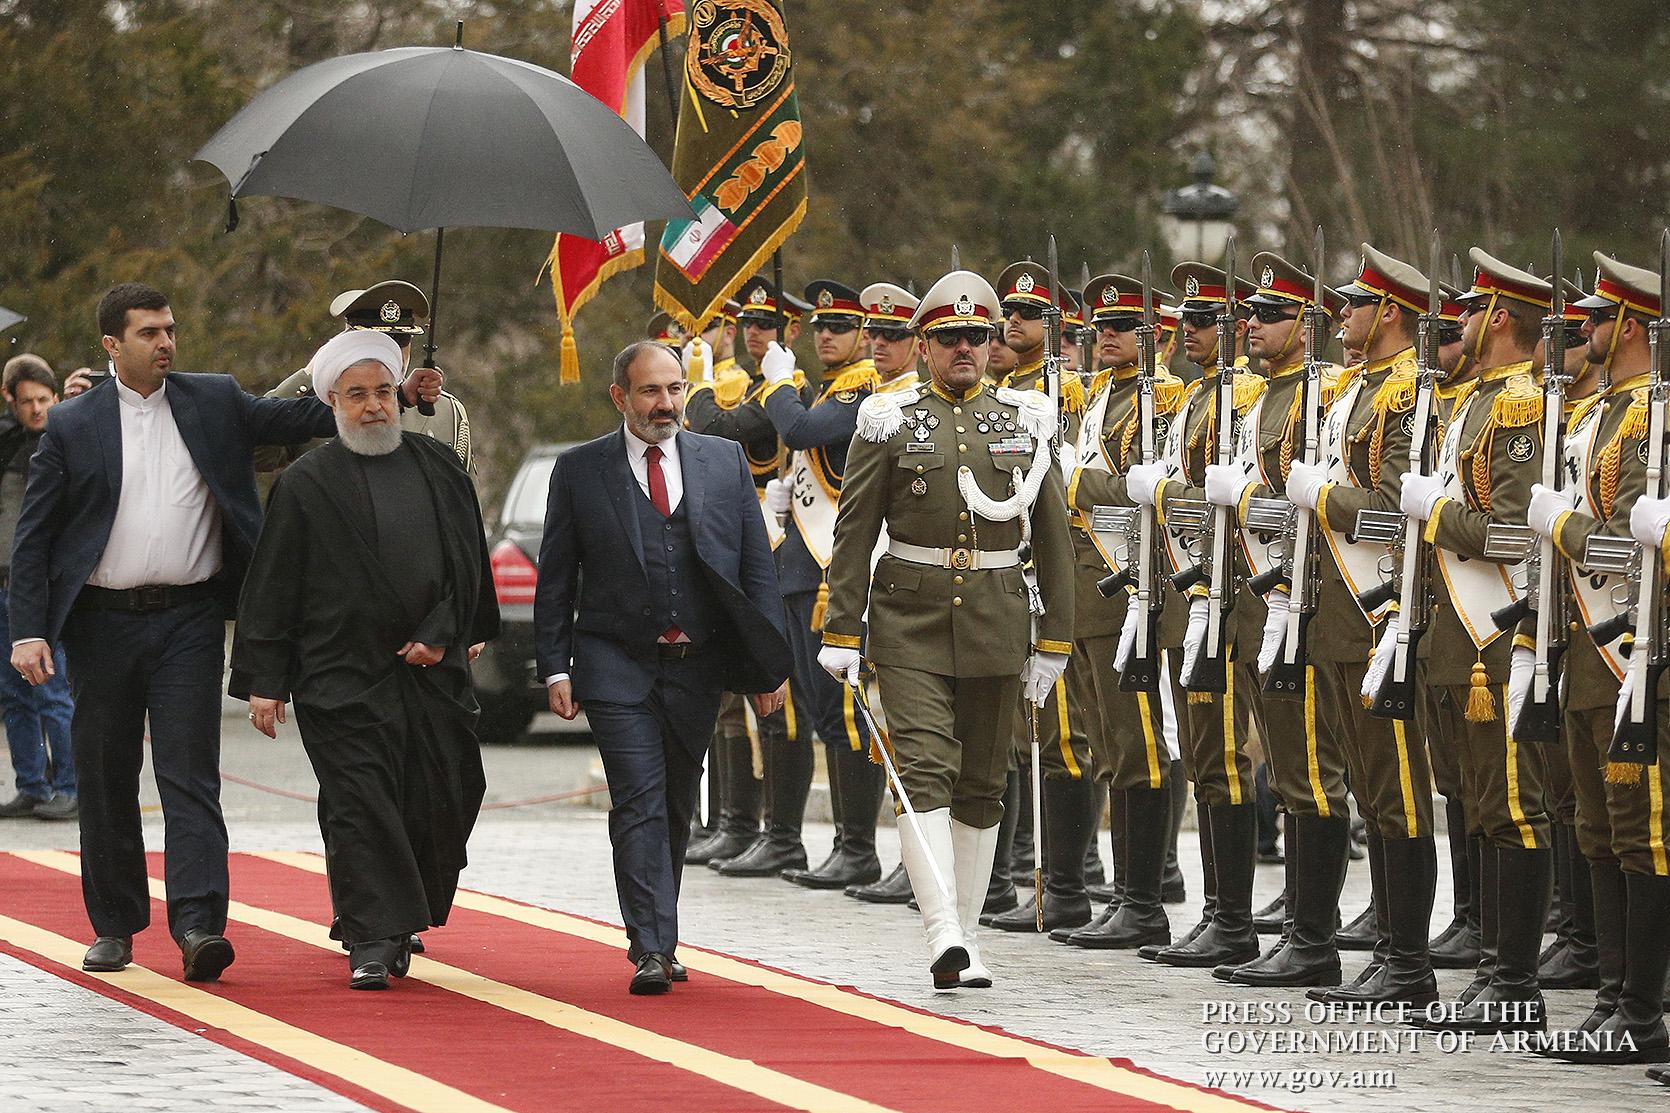 Հայաստանը պատրաստ է ավելացնել գազի ներկրումն Իրանից և լինել գազի տարանցիկ երկիր